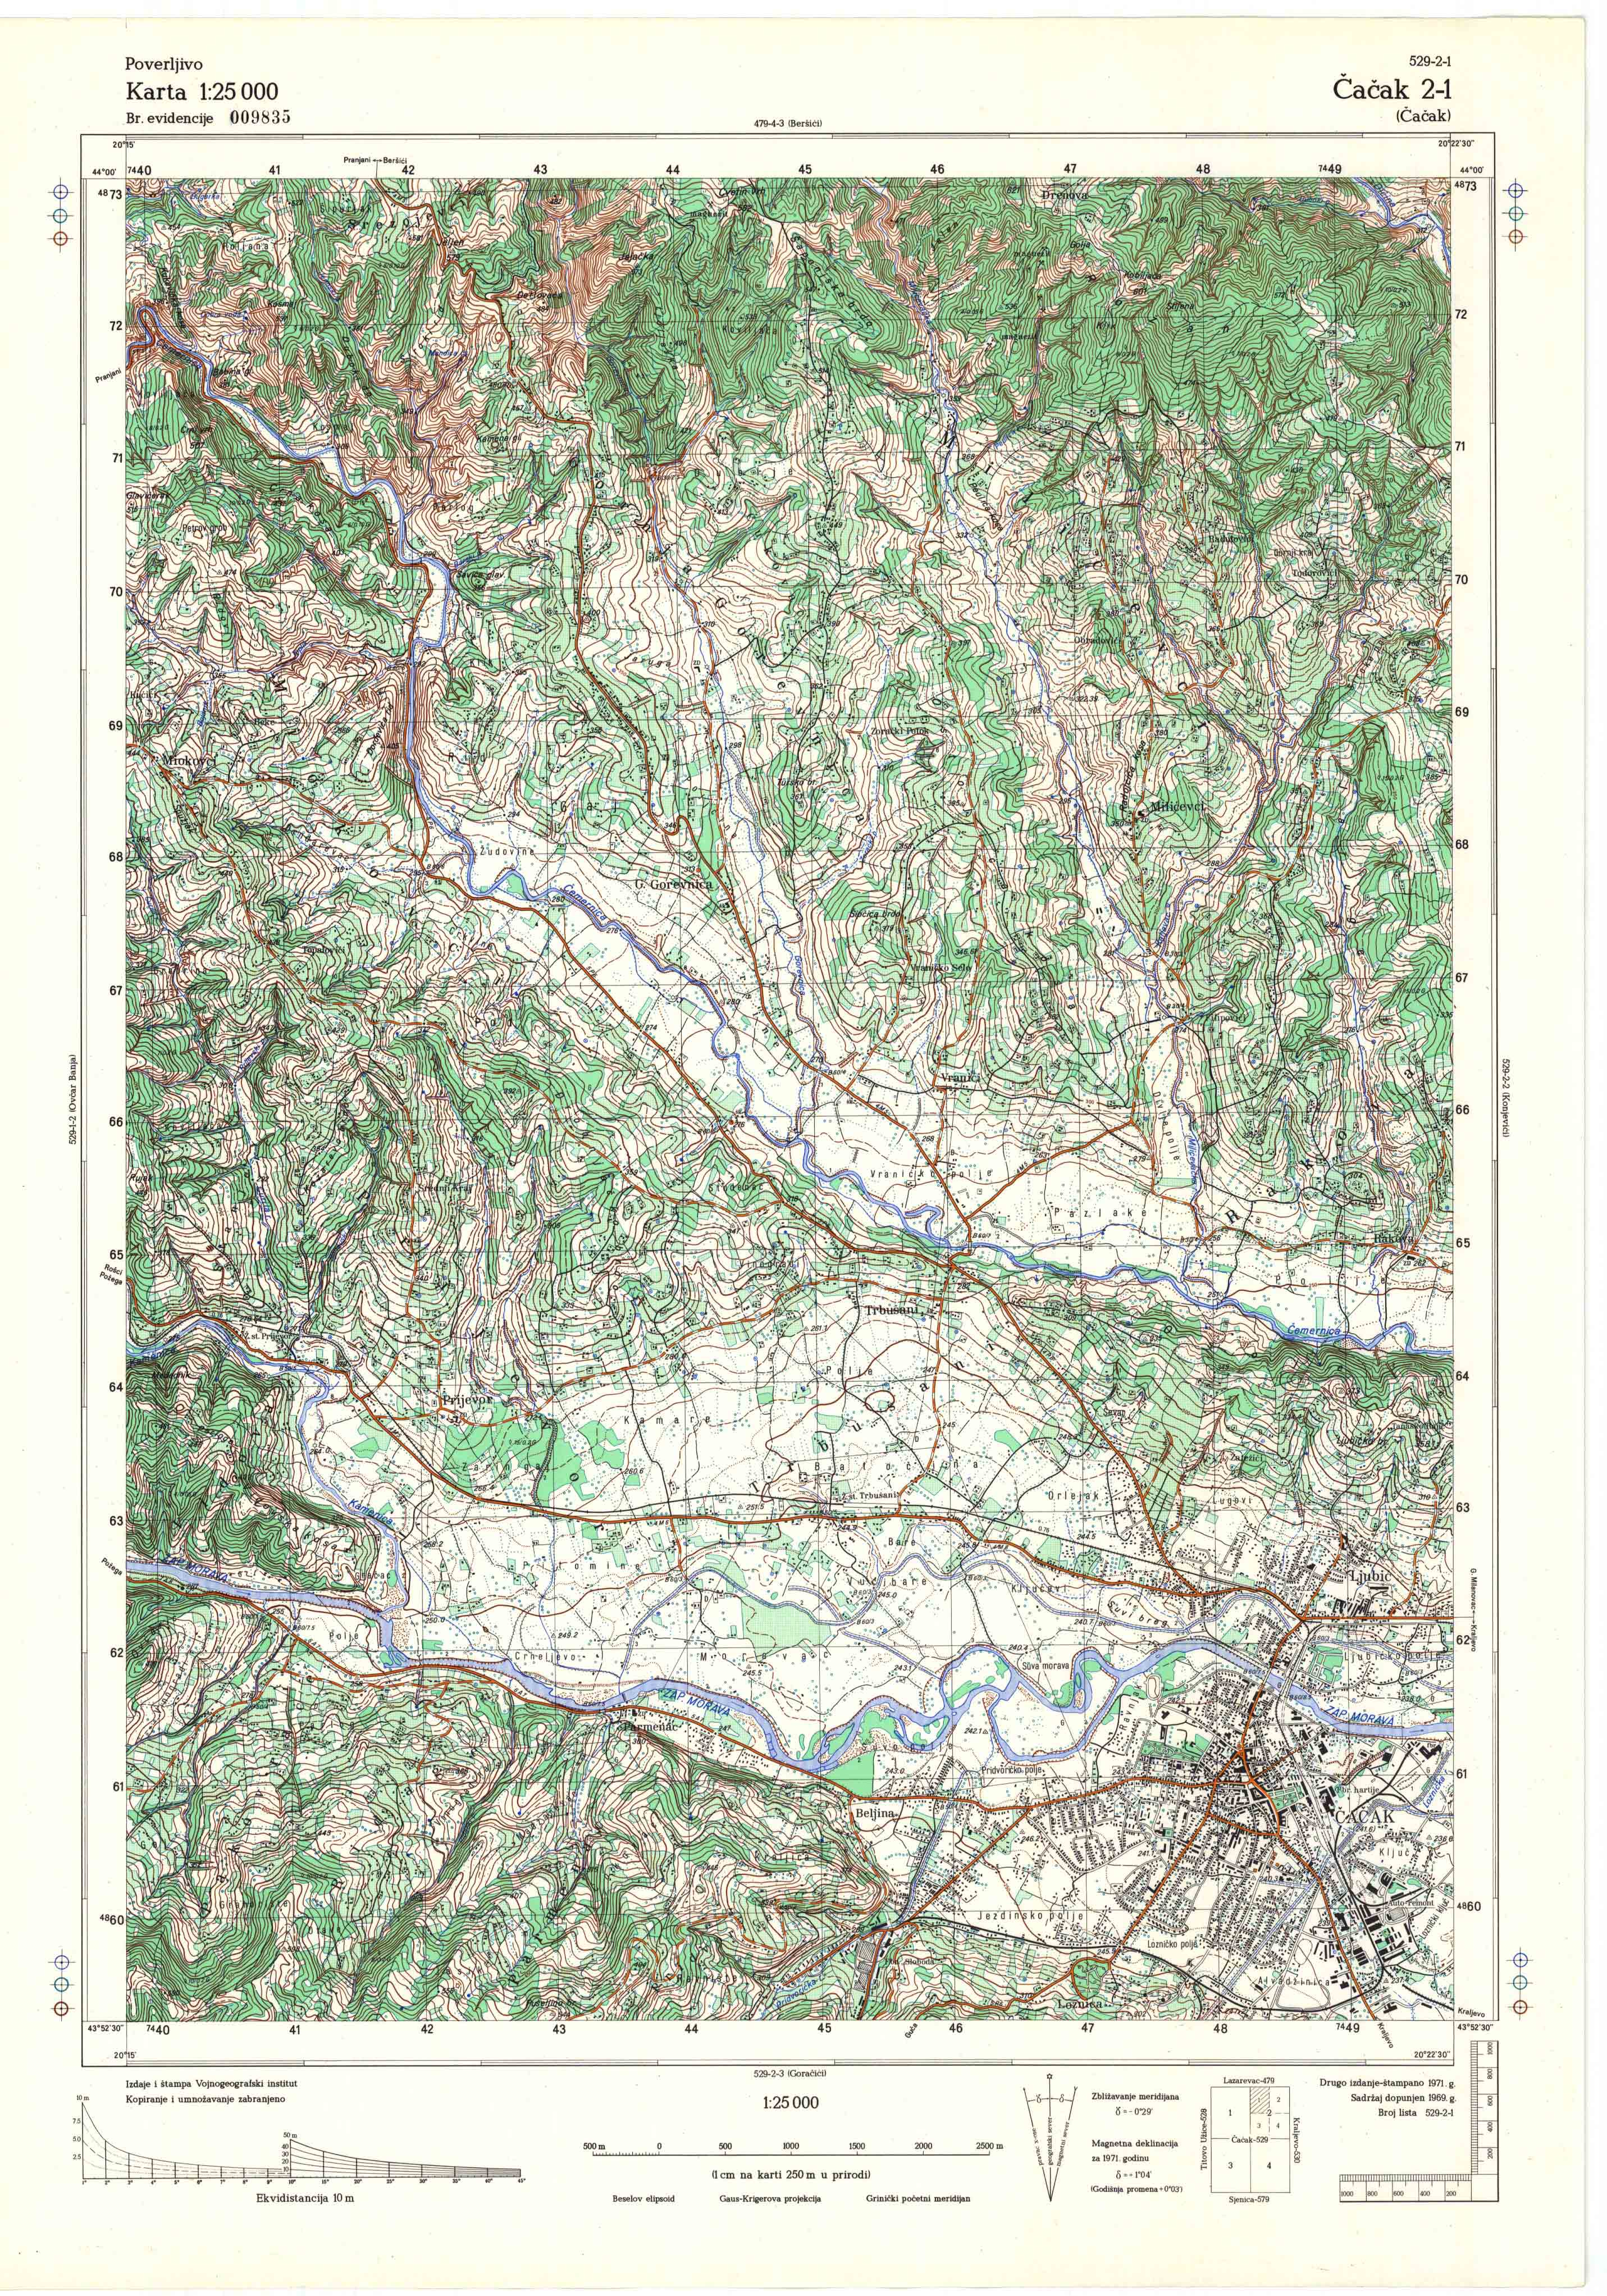  topografska karta srbije 25000 JNA  Čačak